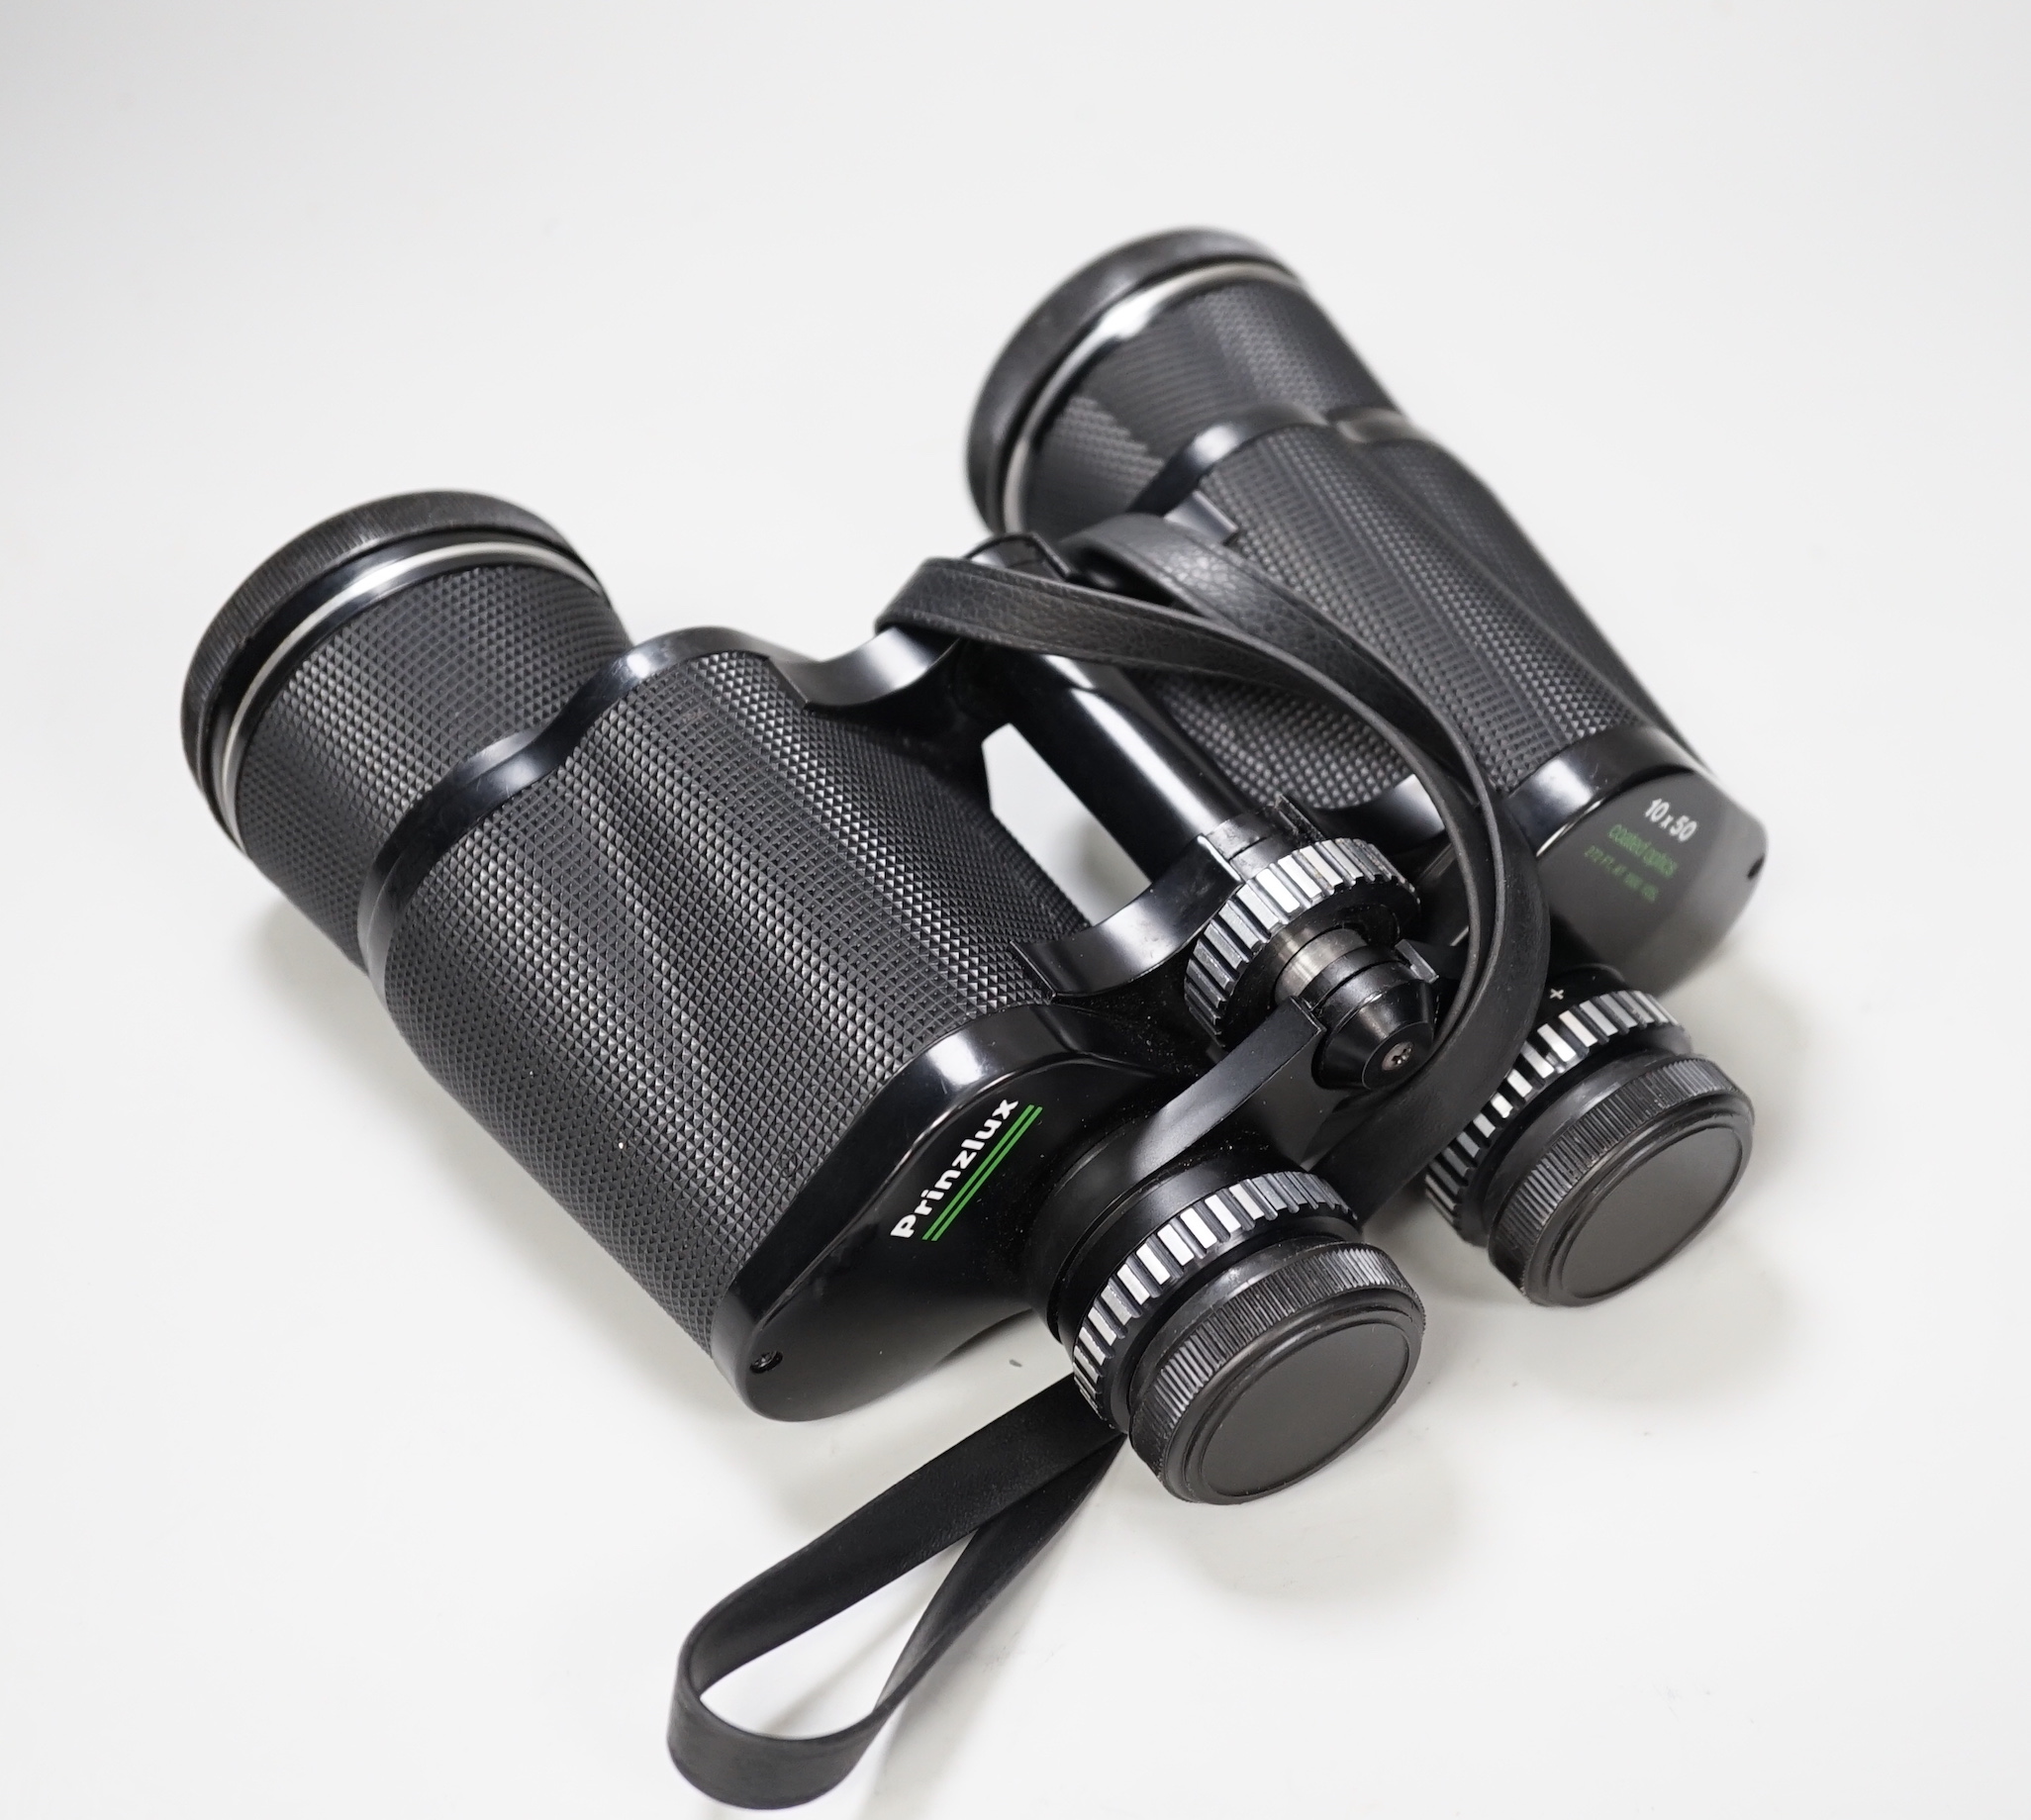 A pair of Prinzlux binoculars 10 x 50 and a pair of Tasco binoculars 20 x 60